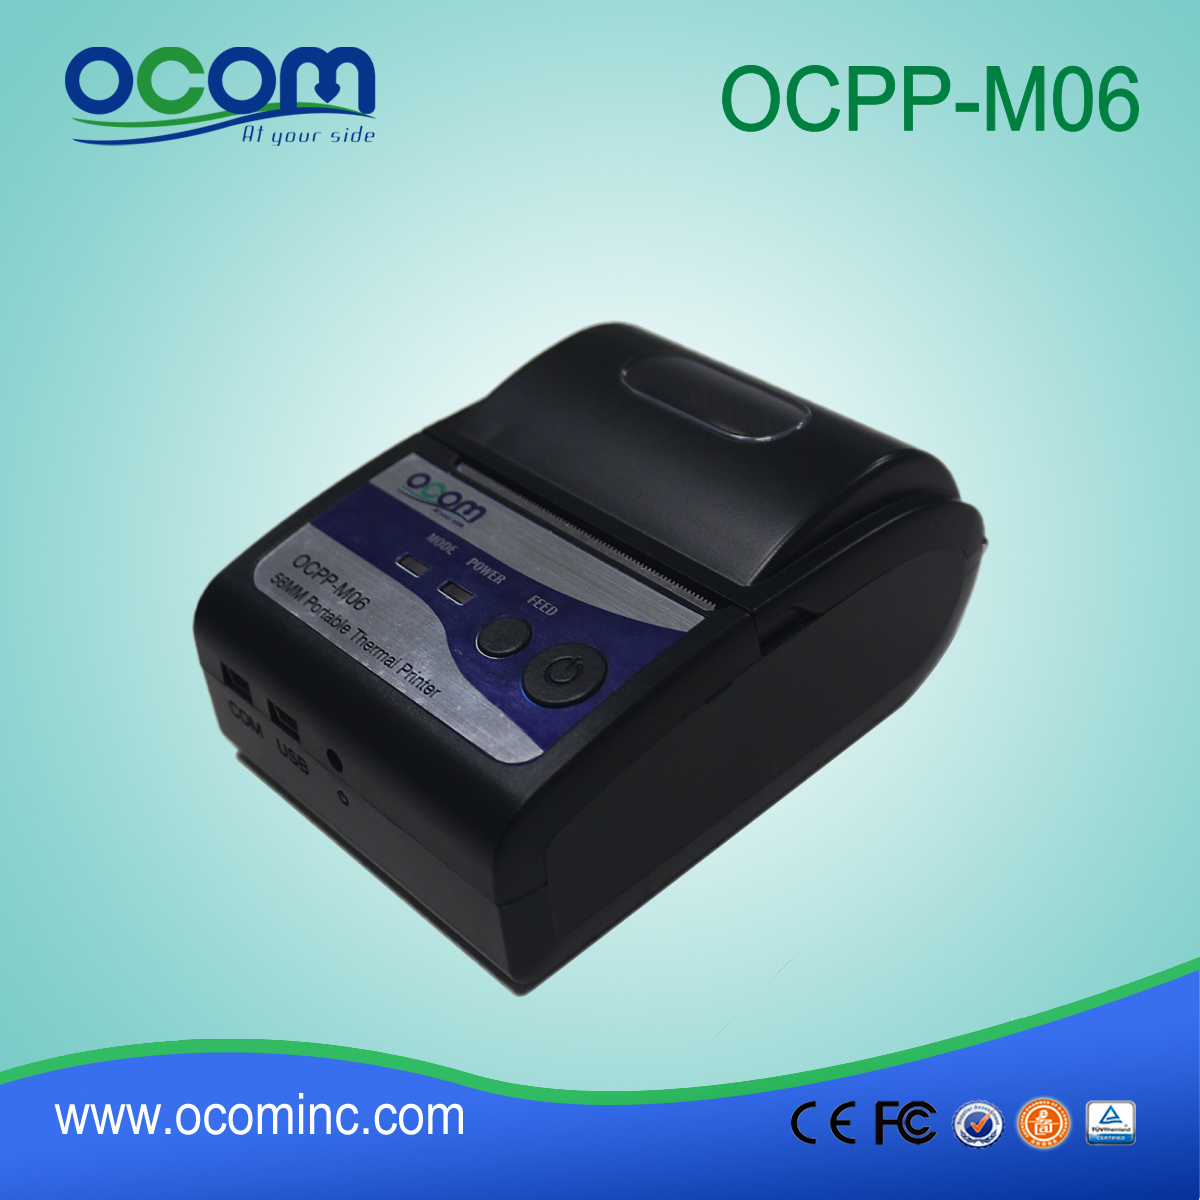 (OCPP-M06) Chiny fabryka OCOM wykonane 58mm termiczną drukarkę przenośną mini bluetooth